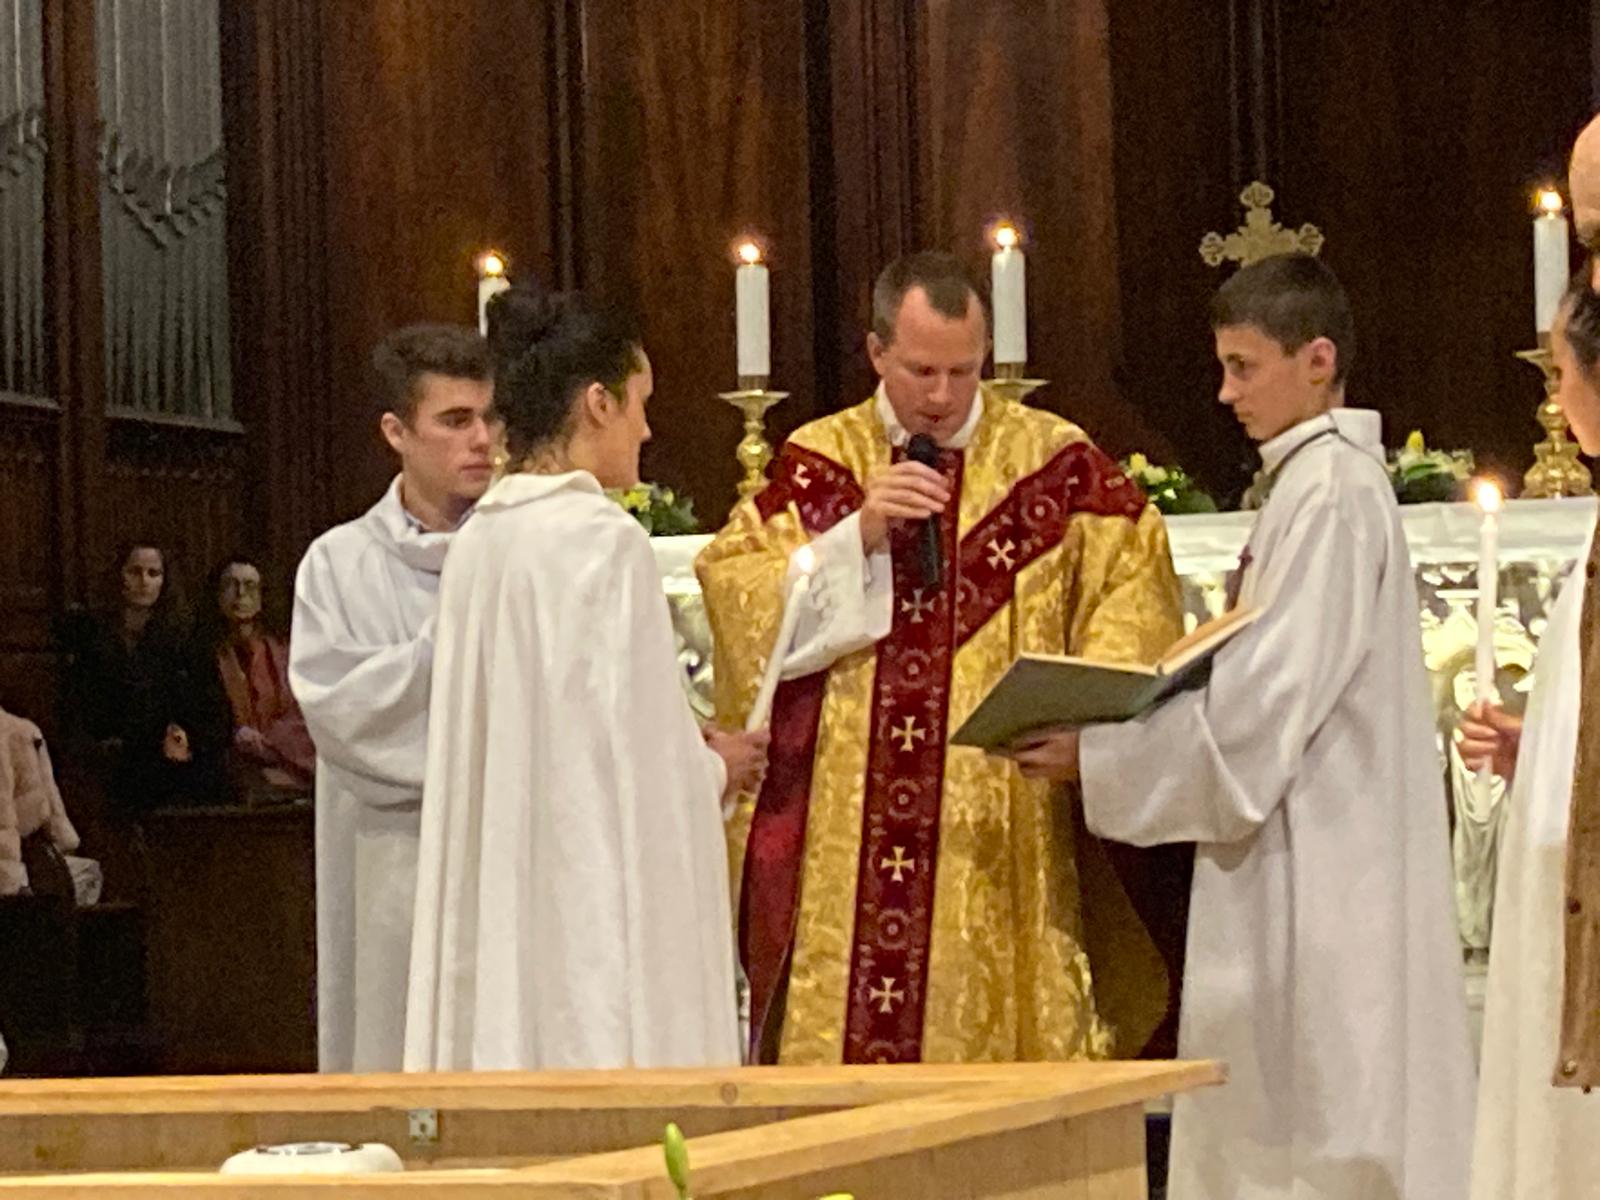 sacrement du baptême adulte 2020 - paroisse saint nizier - lyon